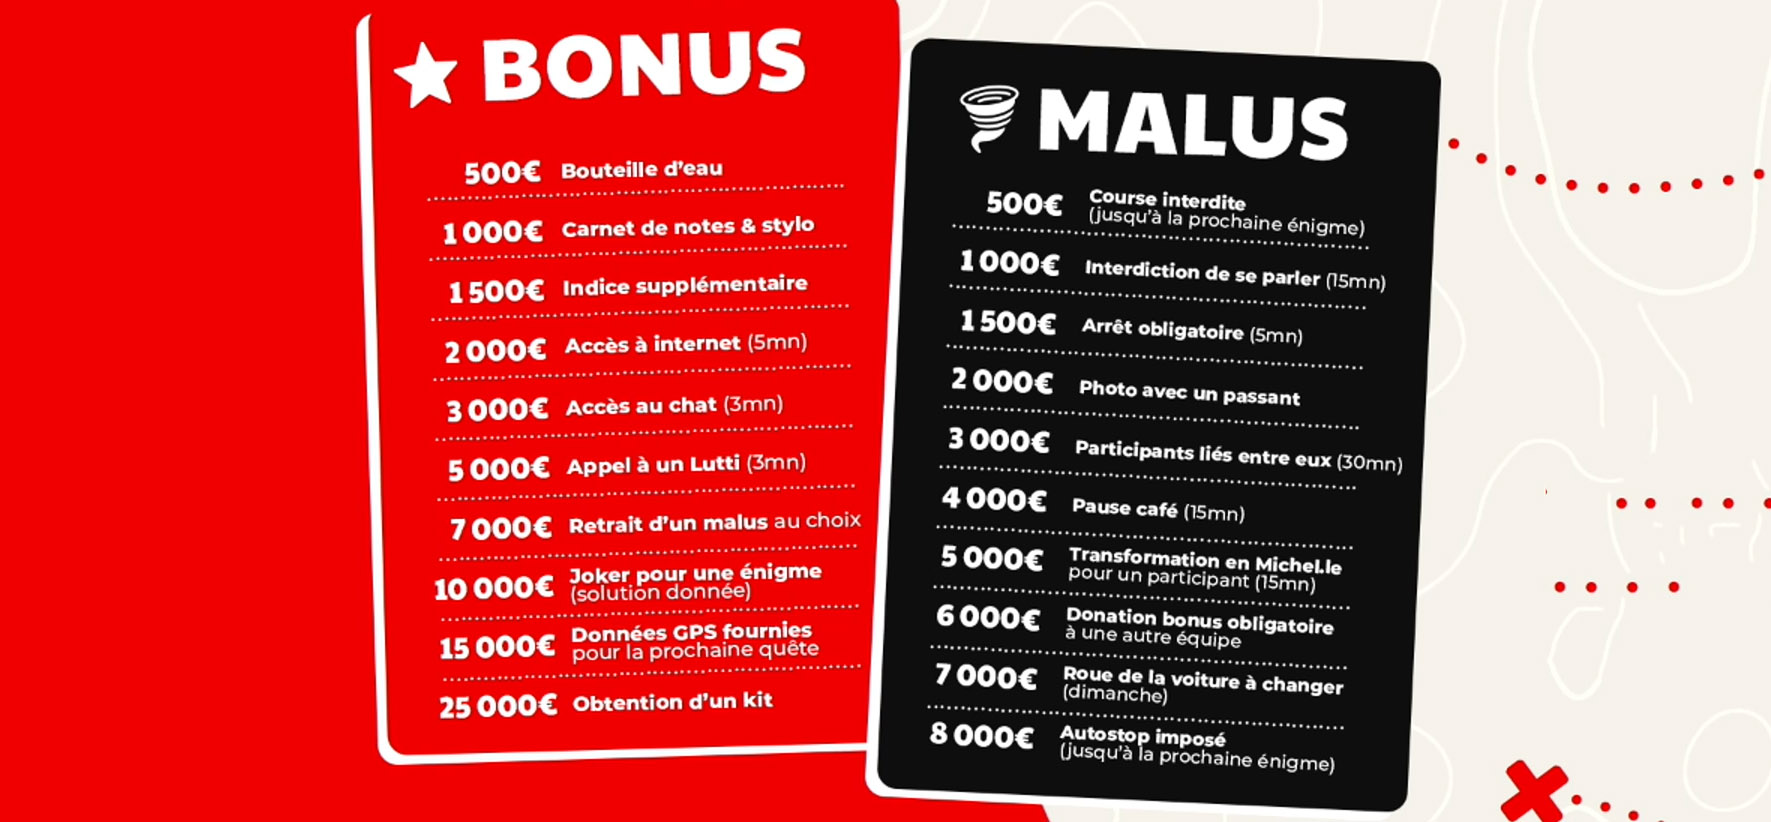 Liste des Bonus et Malus selon les dons